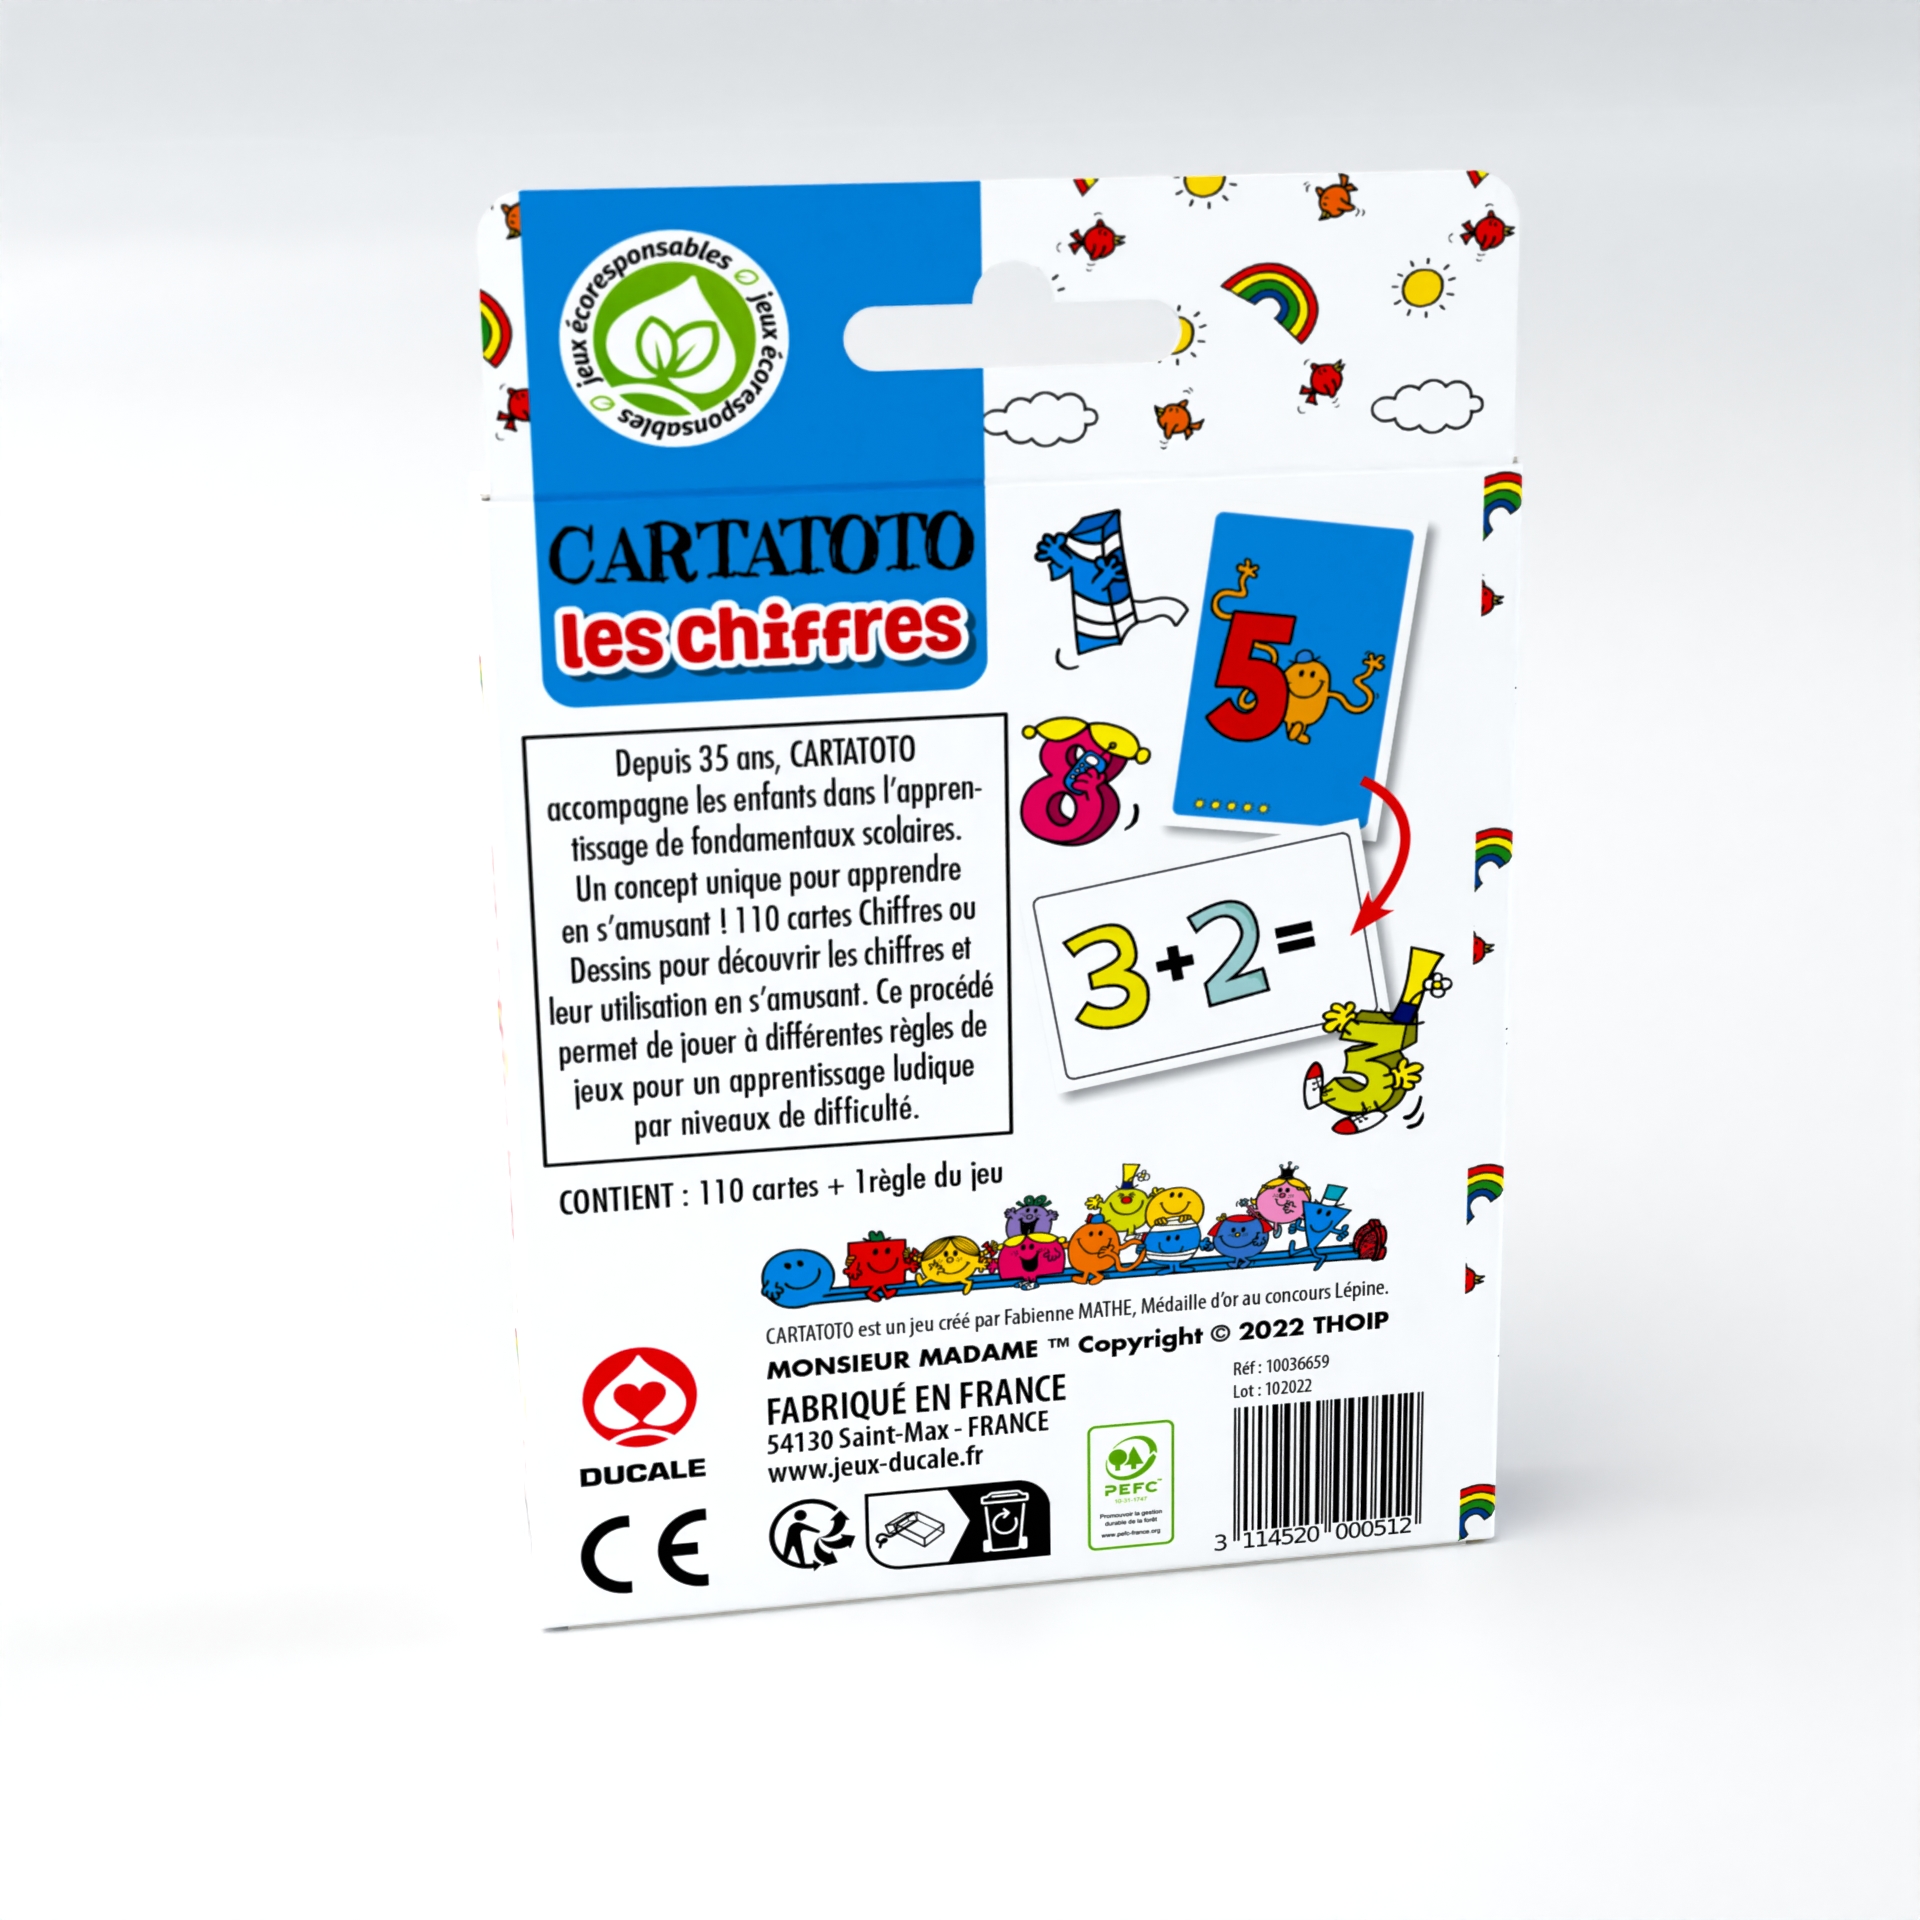 Cartatoto anglais - jeu de carte éducatif - France cartes - Ducale